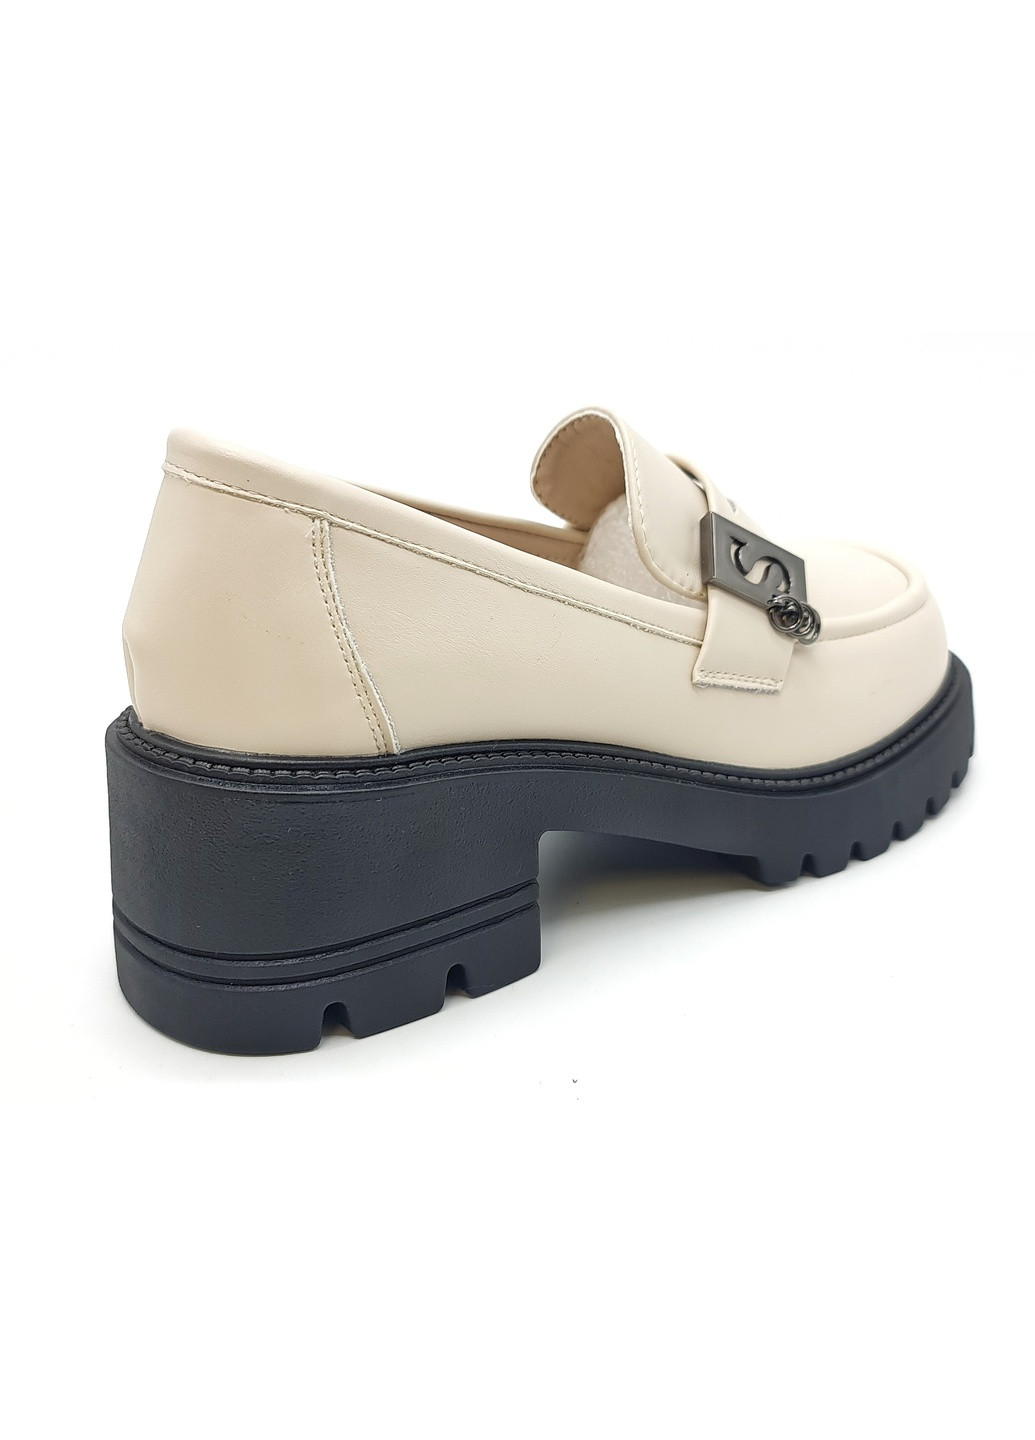 Женские туфли бежевые кожаные YA-18-7 23 см(р) Yalasou